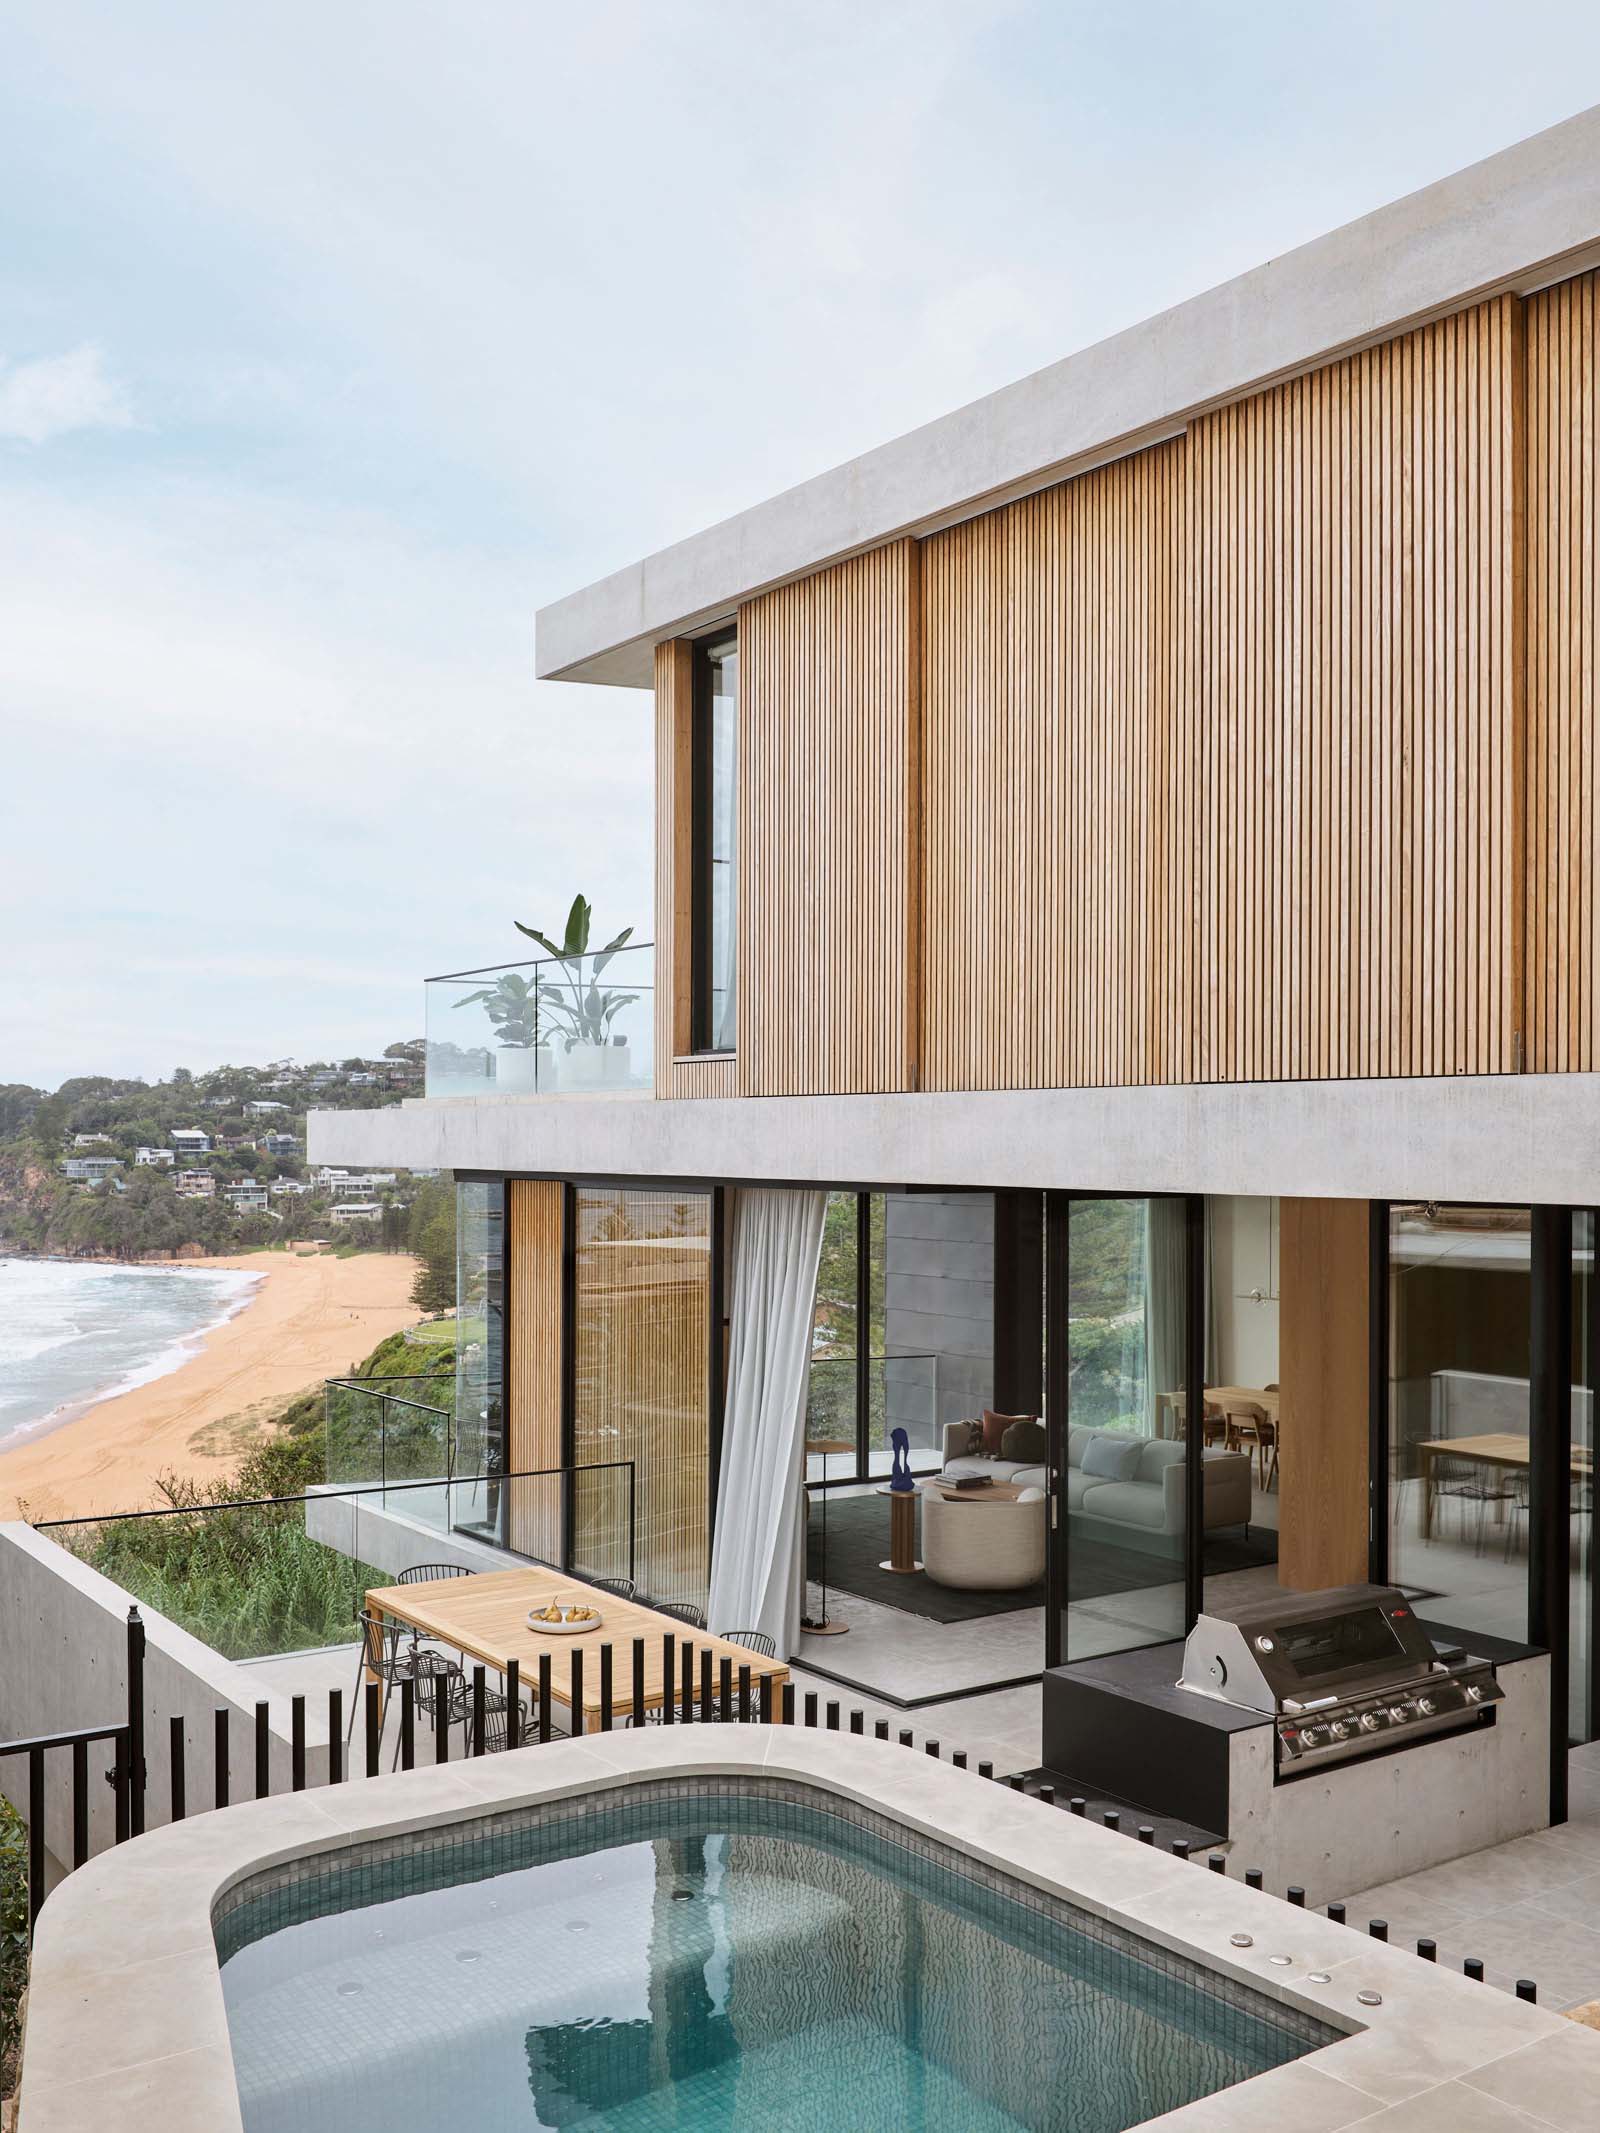 別墅設計,別墅設計案例,Studio Johnston,澳大利亞,鯨魚海灘,國外別墅設計案例,別墅裝修,海景別墅,Whale Beach House